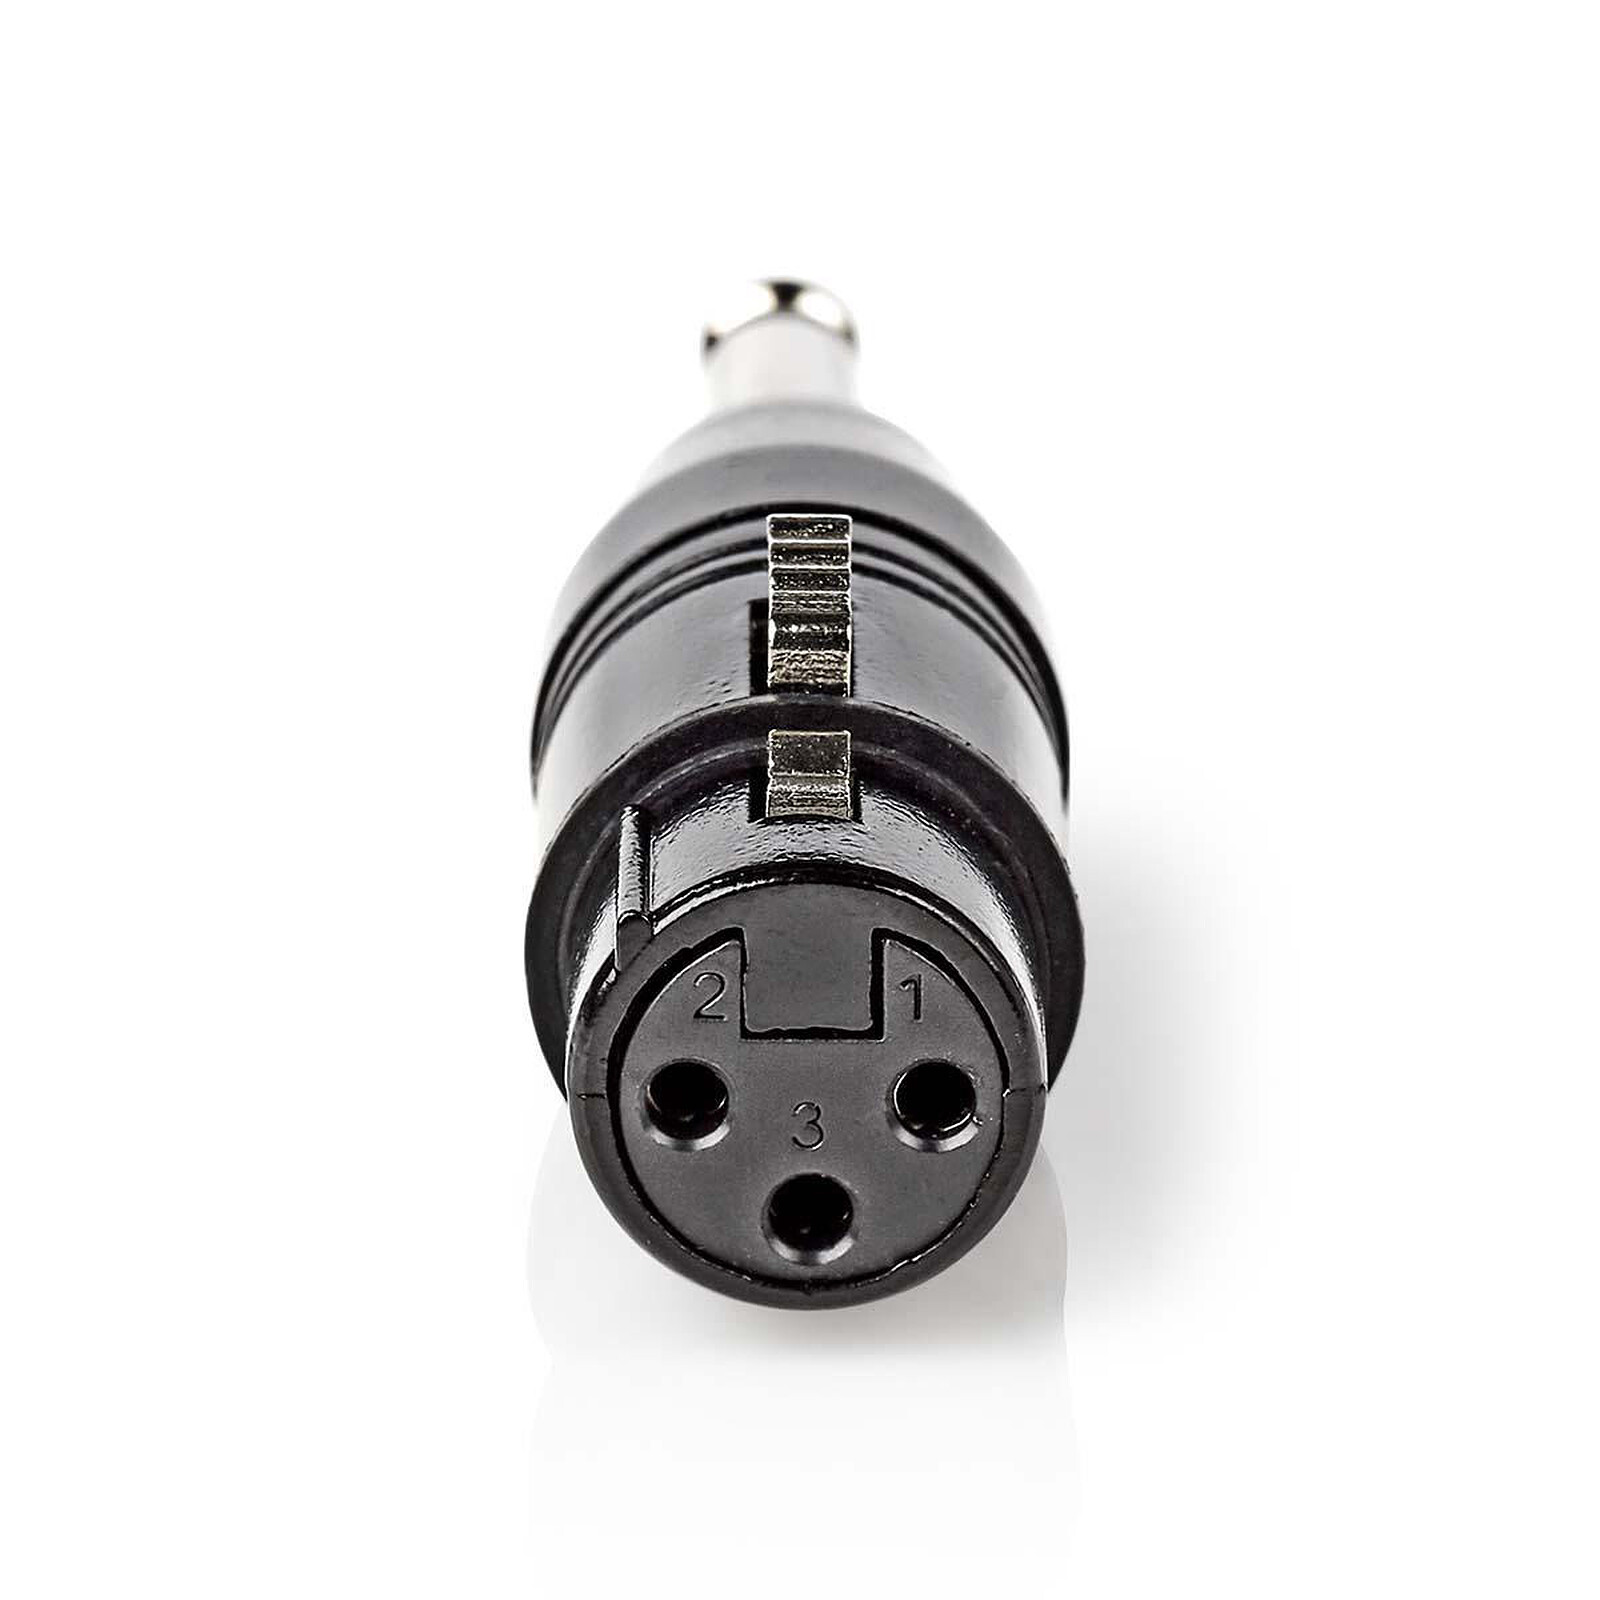 Adaptateur audio haute qualité Jack 6.35 mm mâle / 3.5 mm femelle - Câble  audio Jack - Garantie 3 ans LDLC